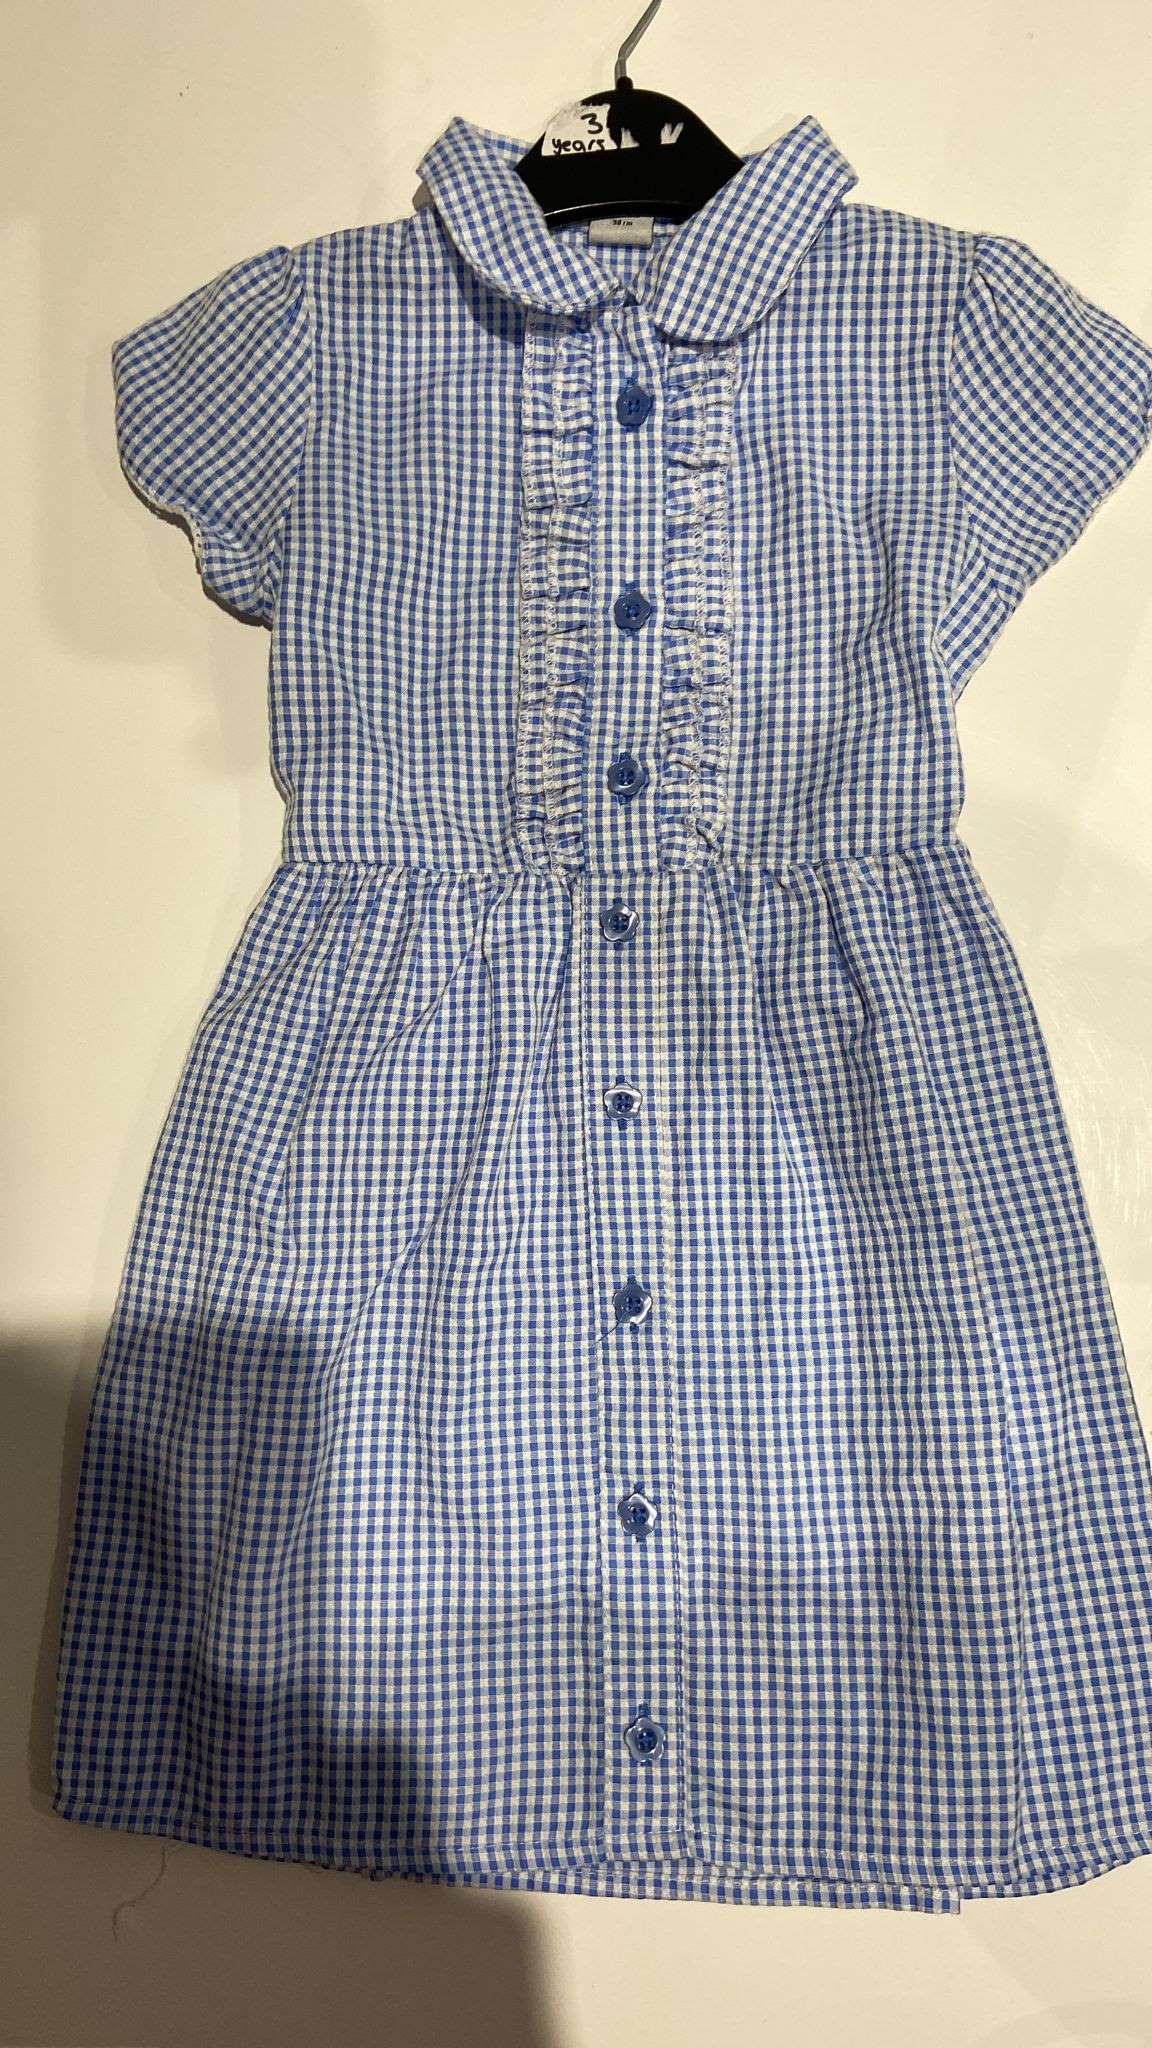 Summer dress buttons 5-6 yrs /6 yrs